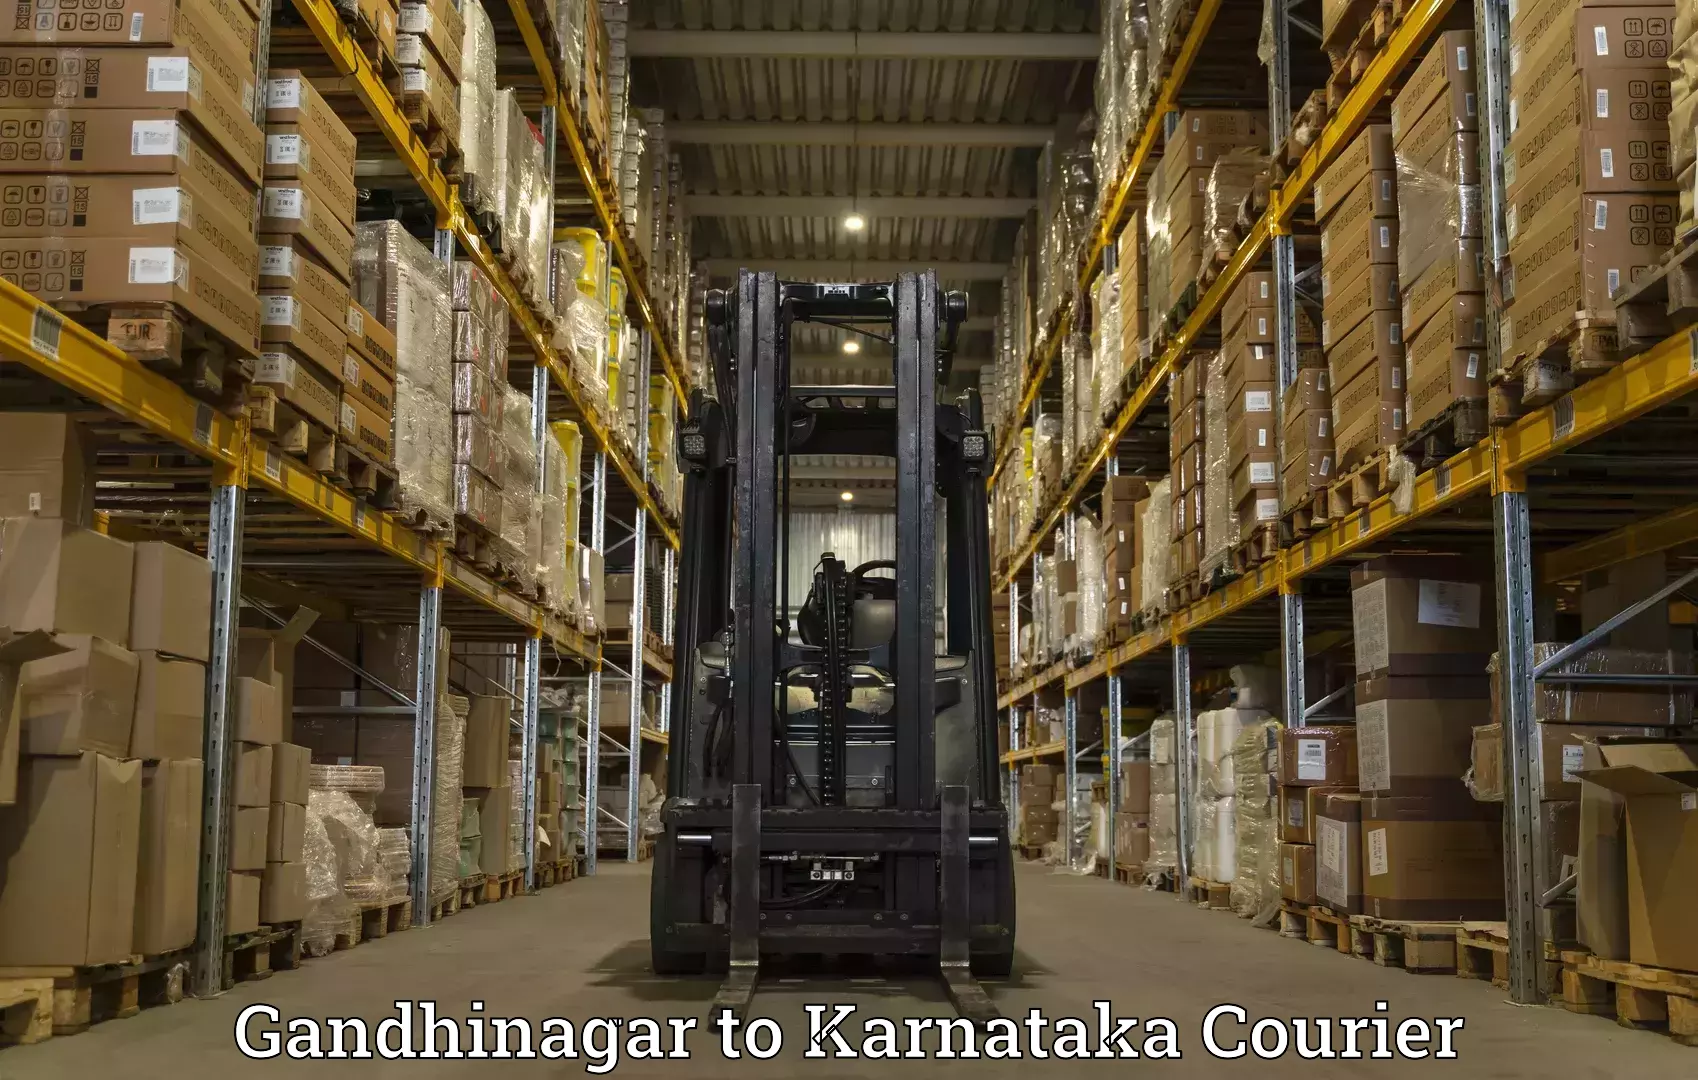 Efficient freight service Gandhinagar to Hubli